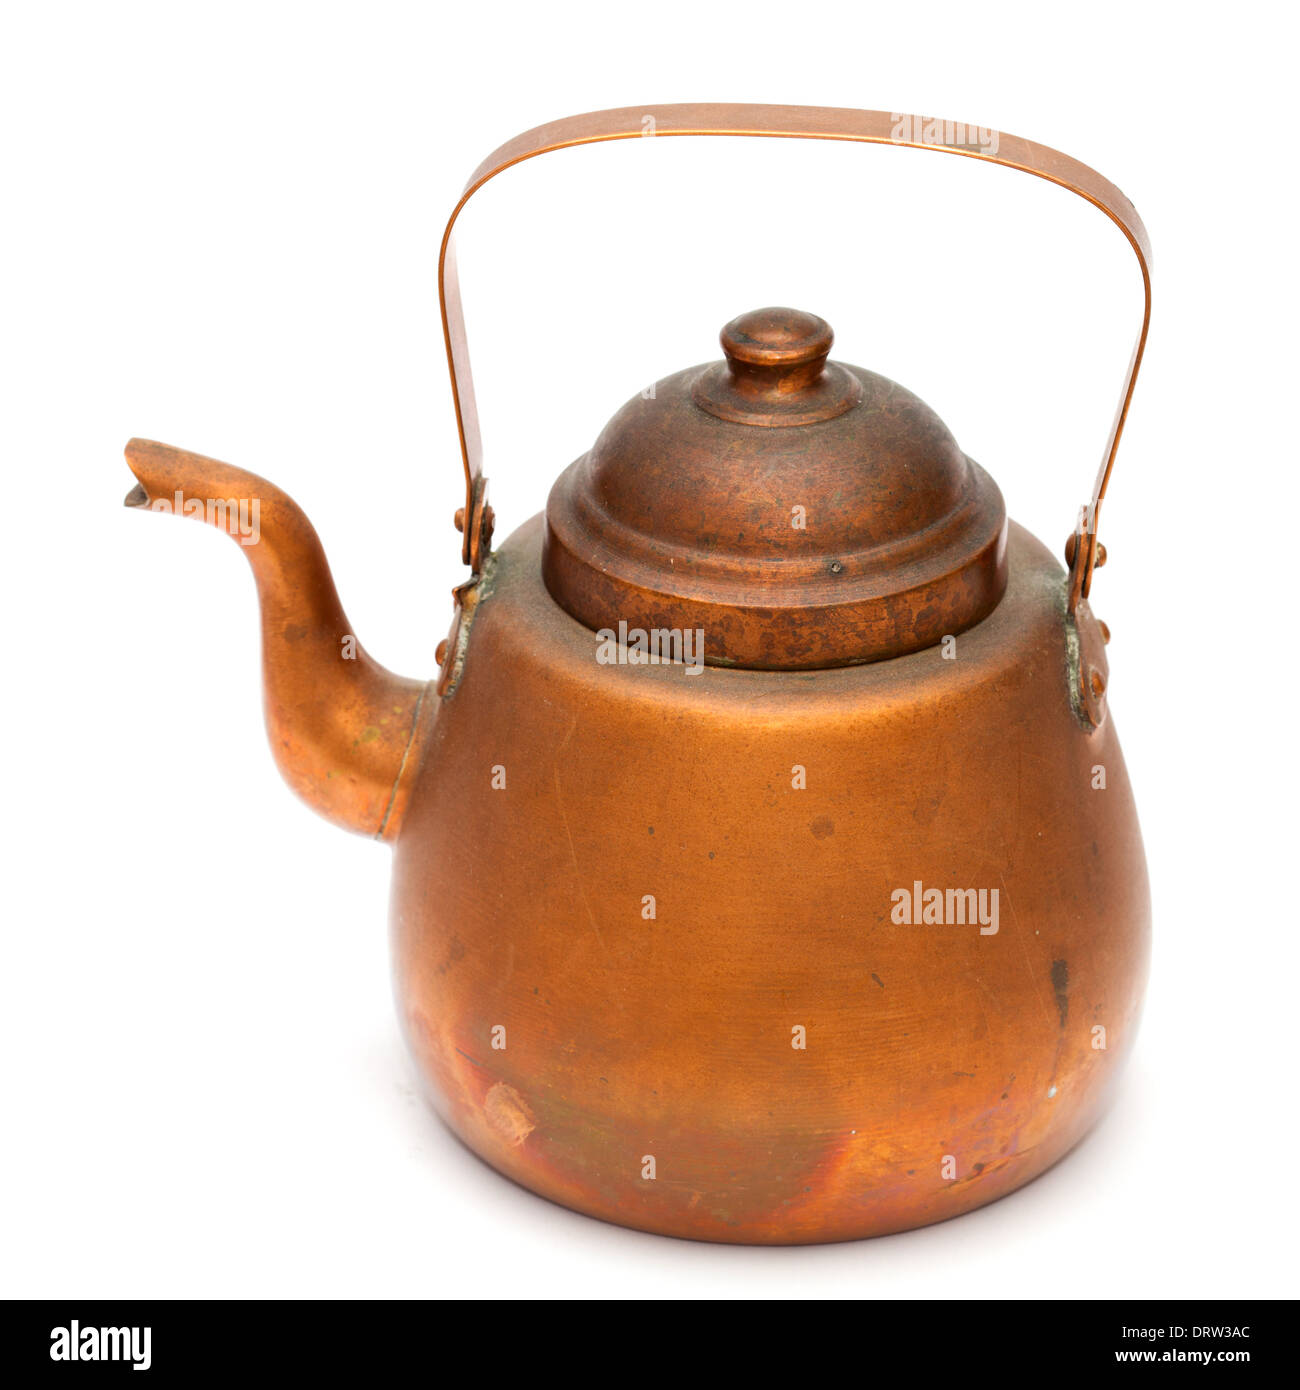 Vintage Hammered Wood Fired Copper Samovar/boiler, Tea Maker for